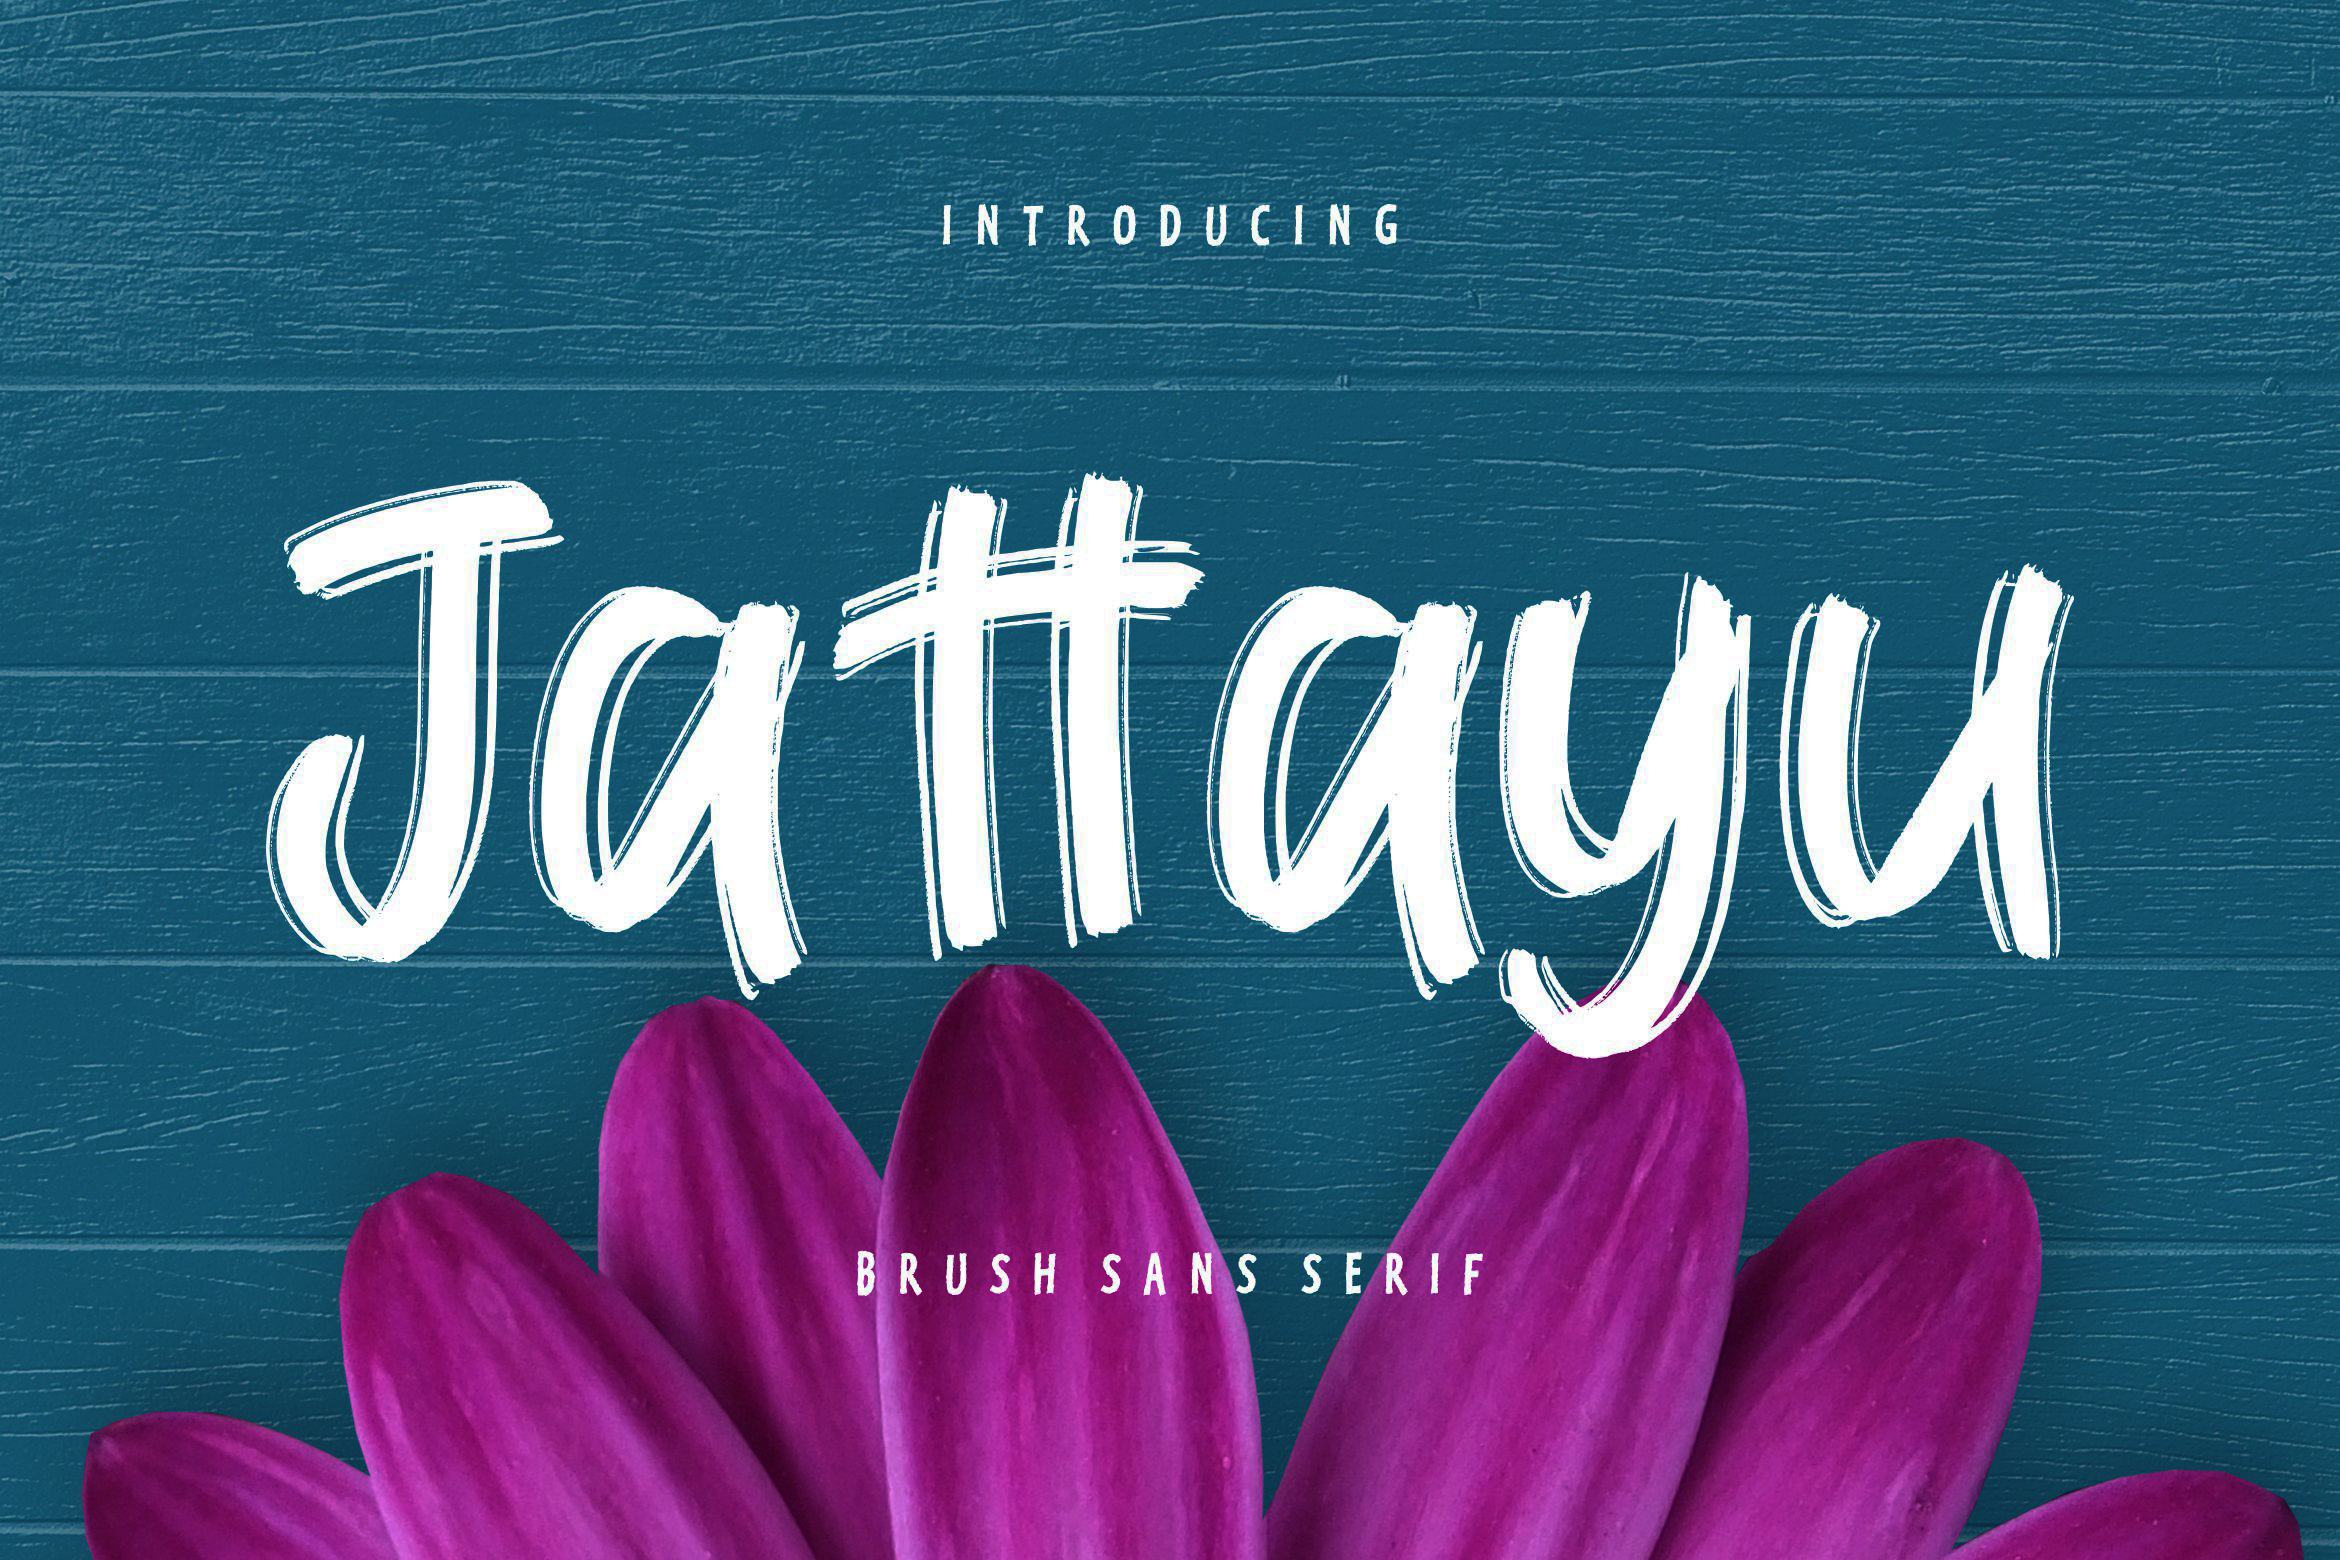 Jattayu